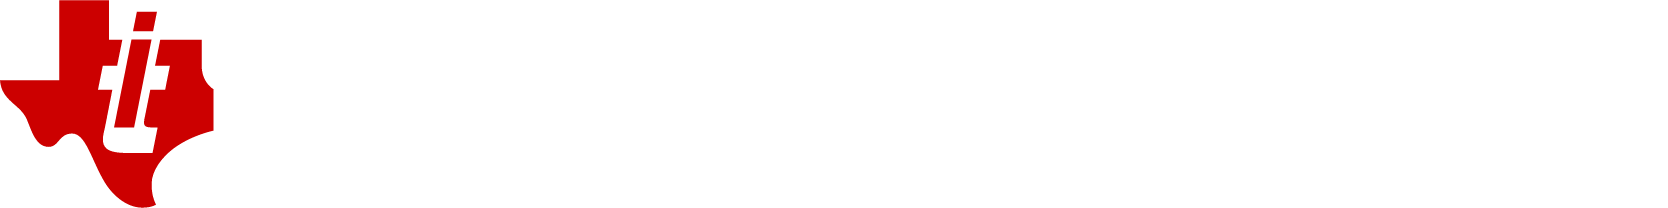 Texas Instruments Logo groß für dunkle Hintergründe (transparentes PNG)